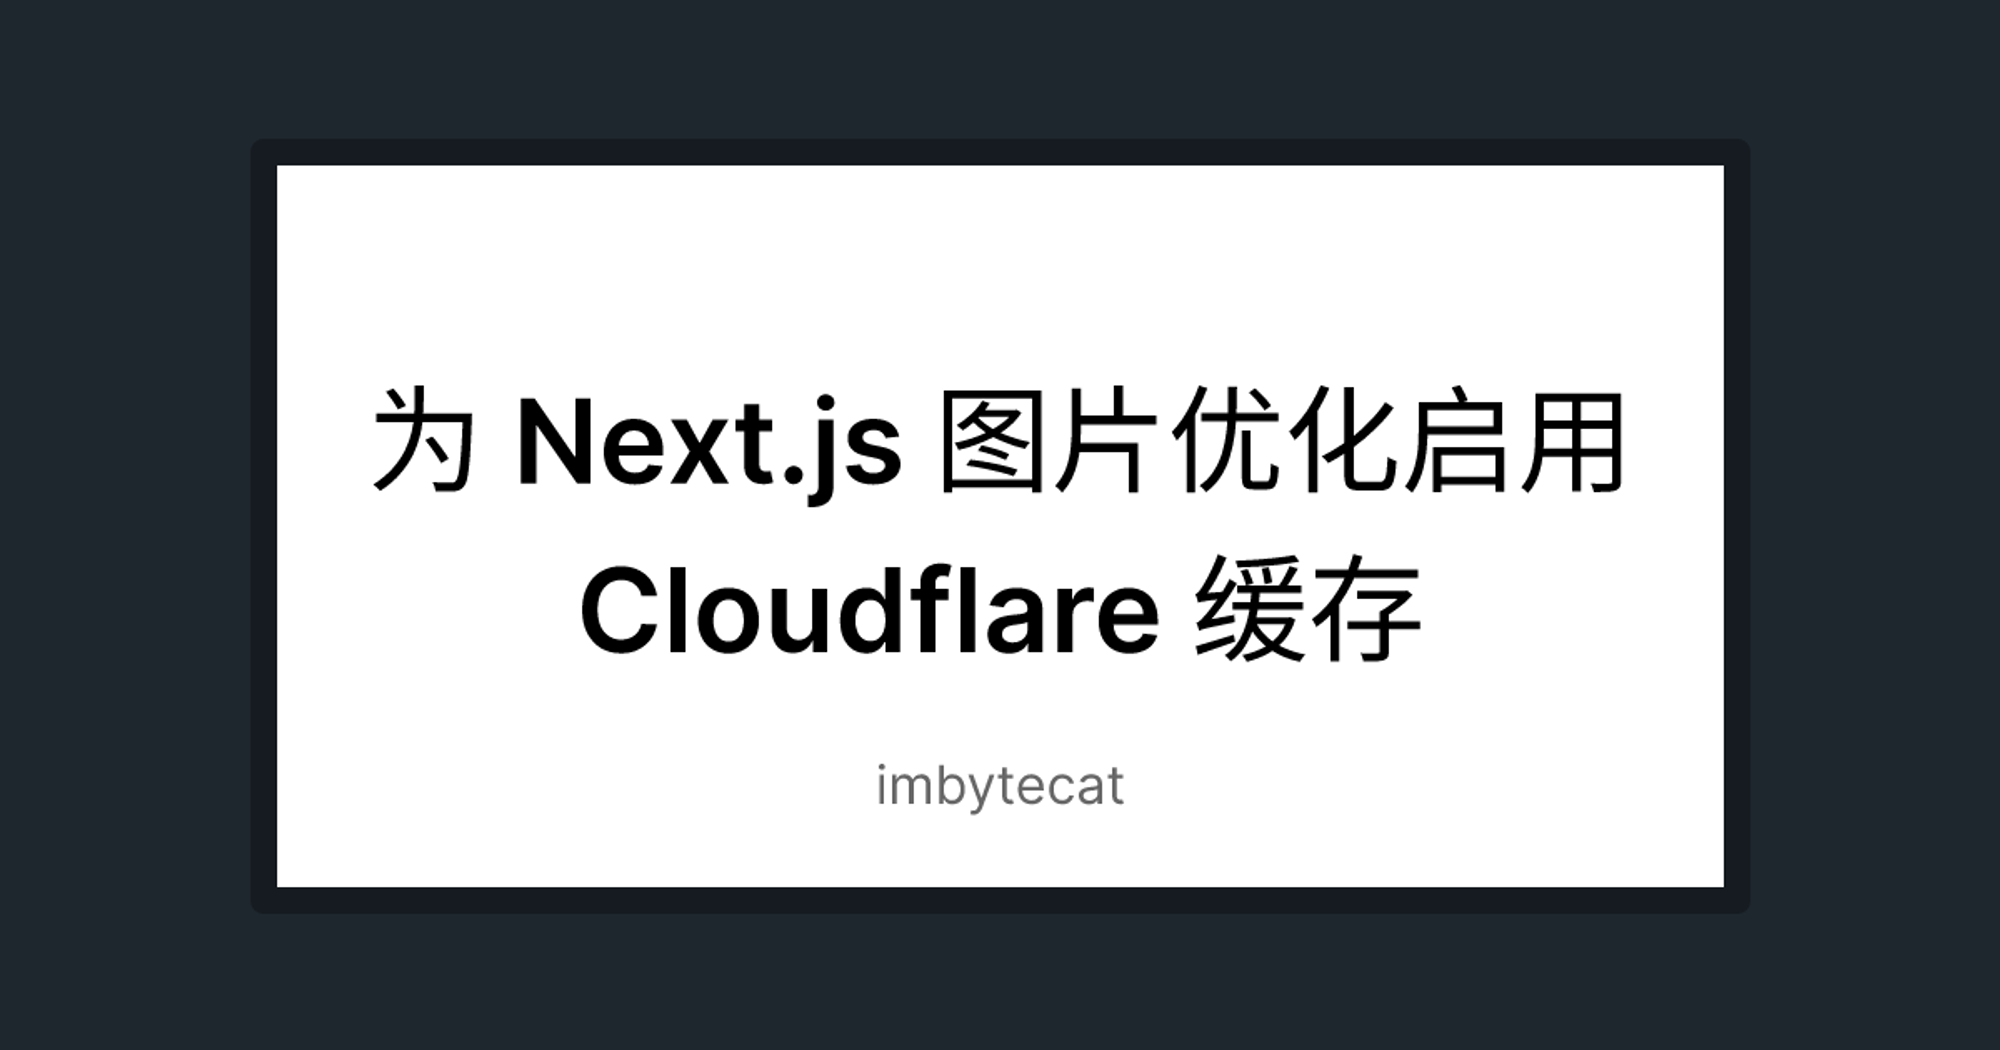 为 Next.js 图片优化启用 Cloudflare 缓存